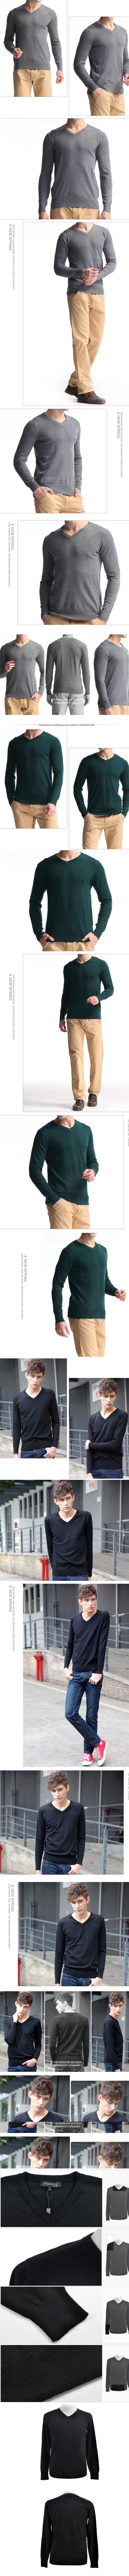 jual sweater vneck pria , sweater dengan model kerah v sangat keren dipakai dengan kemeja sebagai dalaman, temukan koleksi sweater vneck pria terlengkap hanya di store.pakaianfashionpria.com